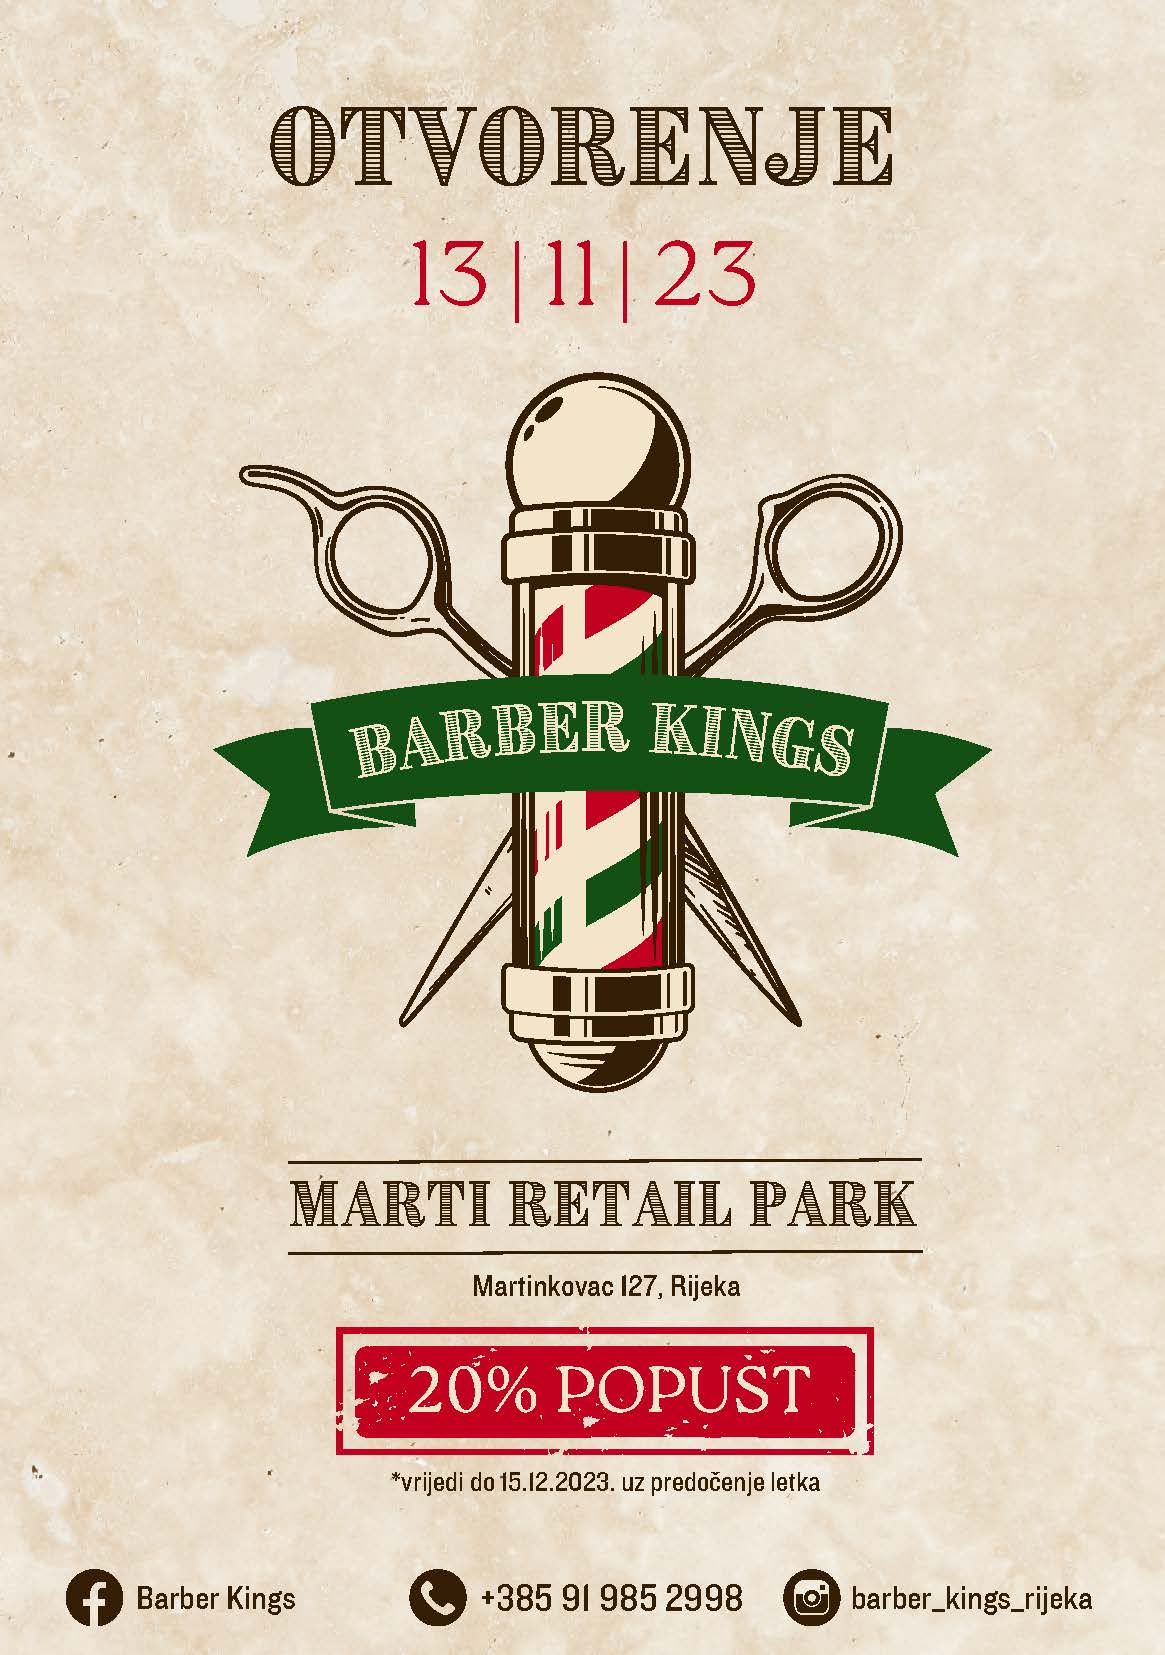 Otvorenje Barber Kings – muški frizerski salon / barber shop u Marti 13.11.2023.